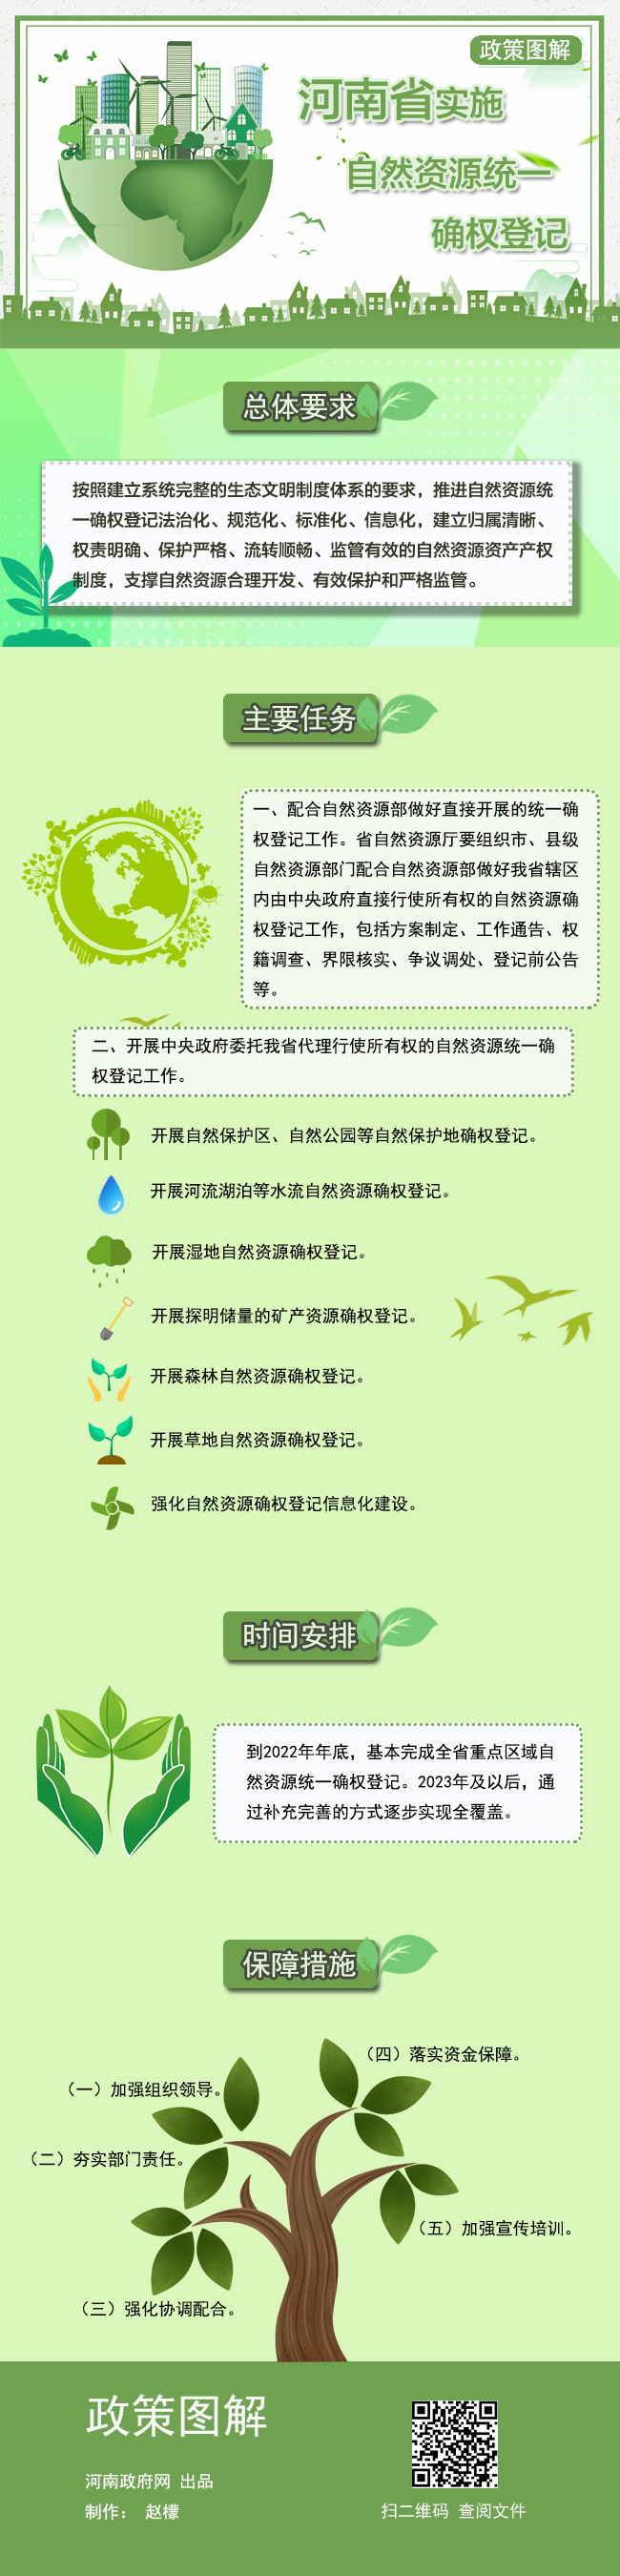 河南省实施自然资源统一确权登记